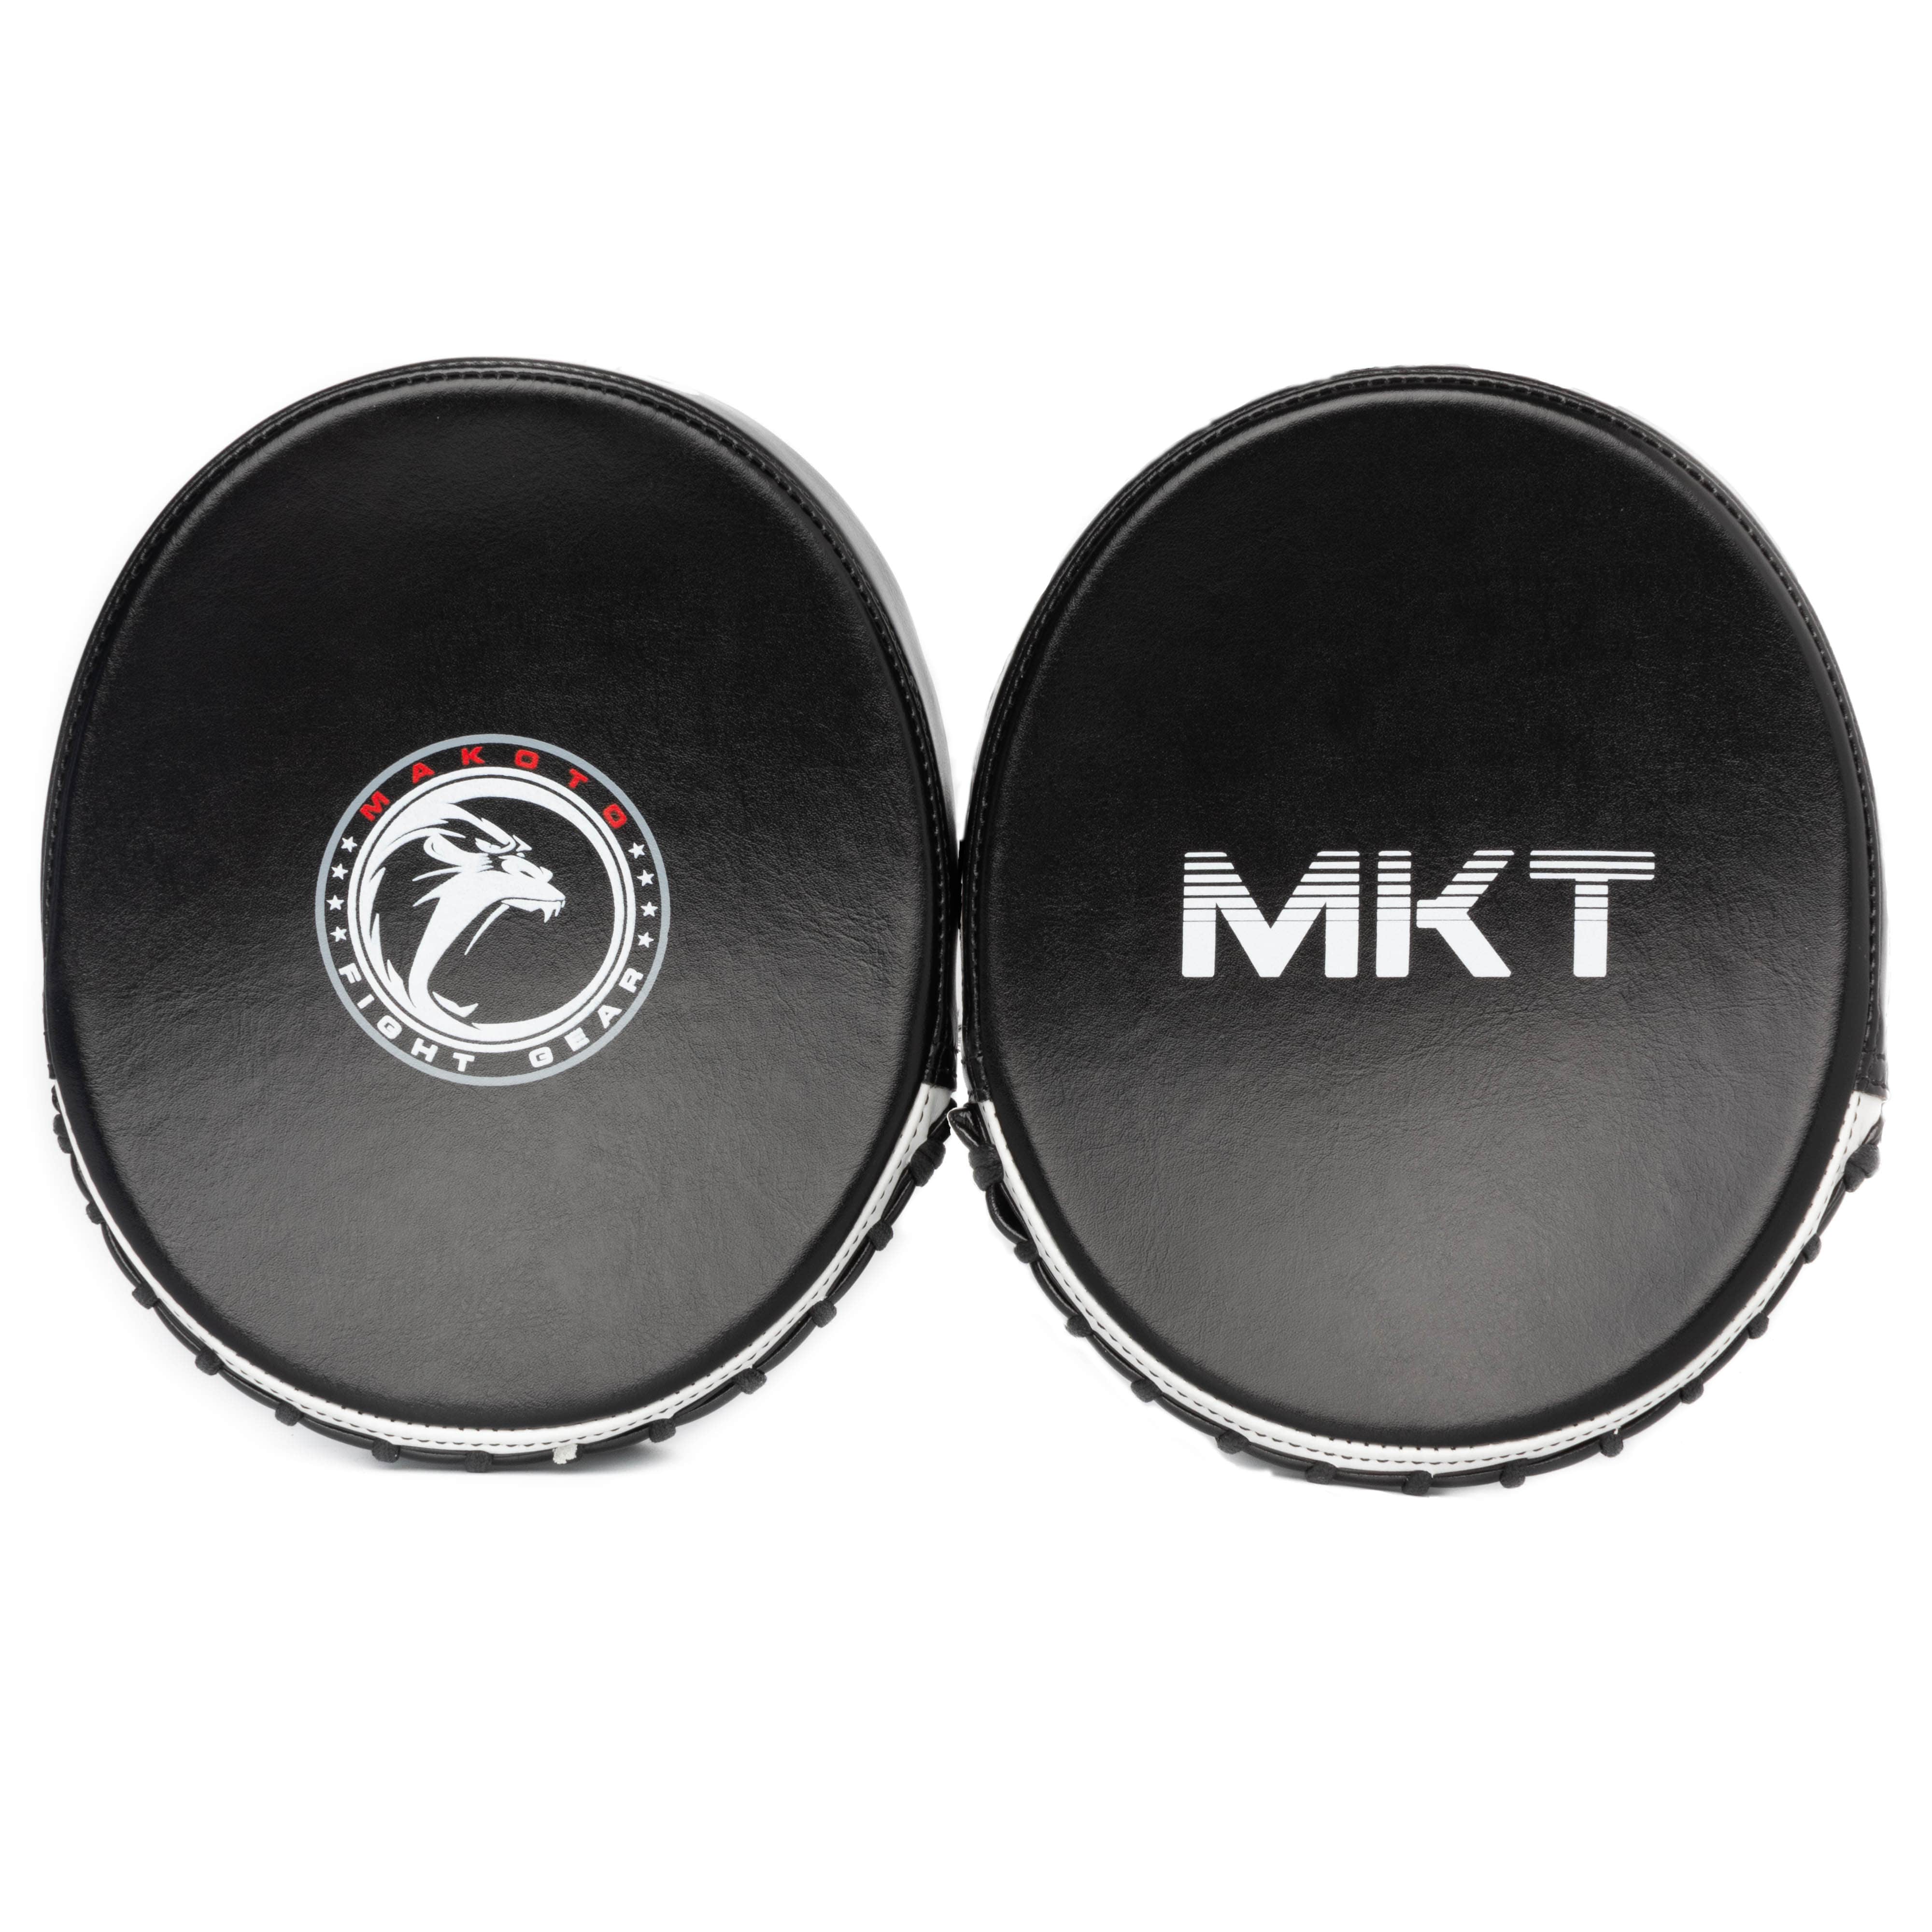 Guanteletas mini para Boxeo Makoto Negro - 100% Microfibra Premium